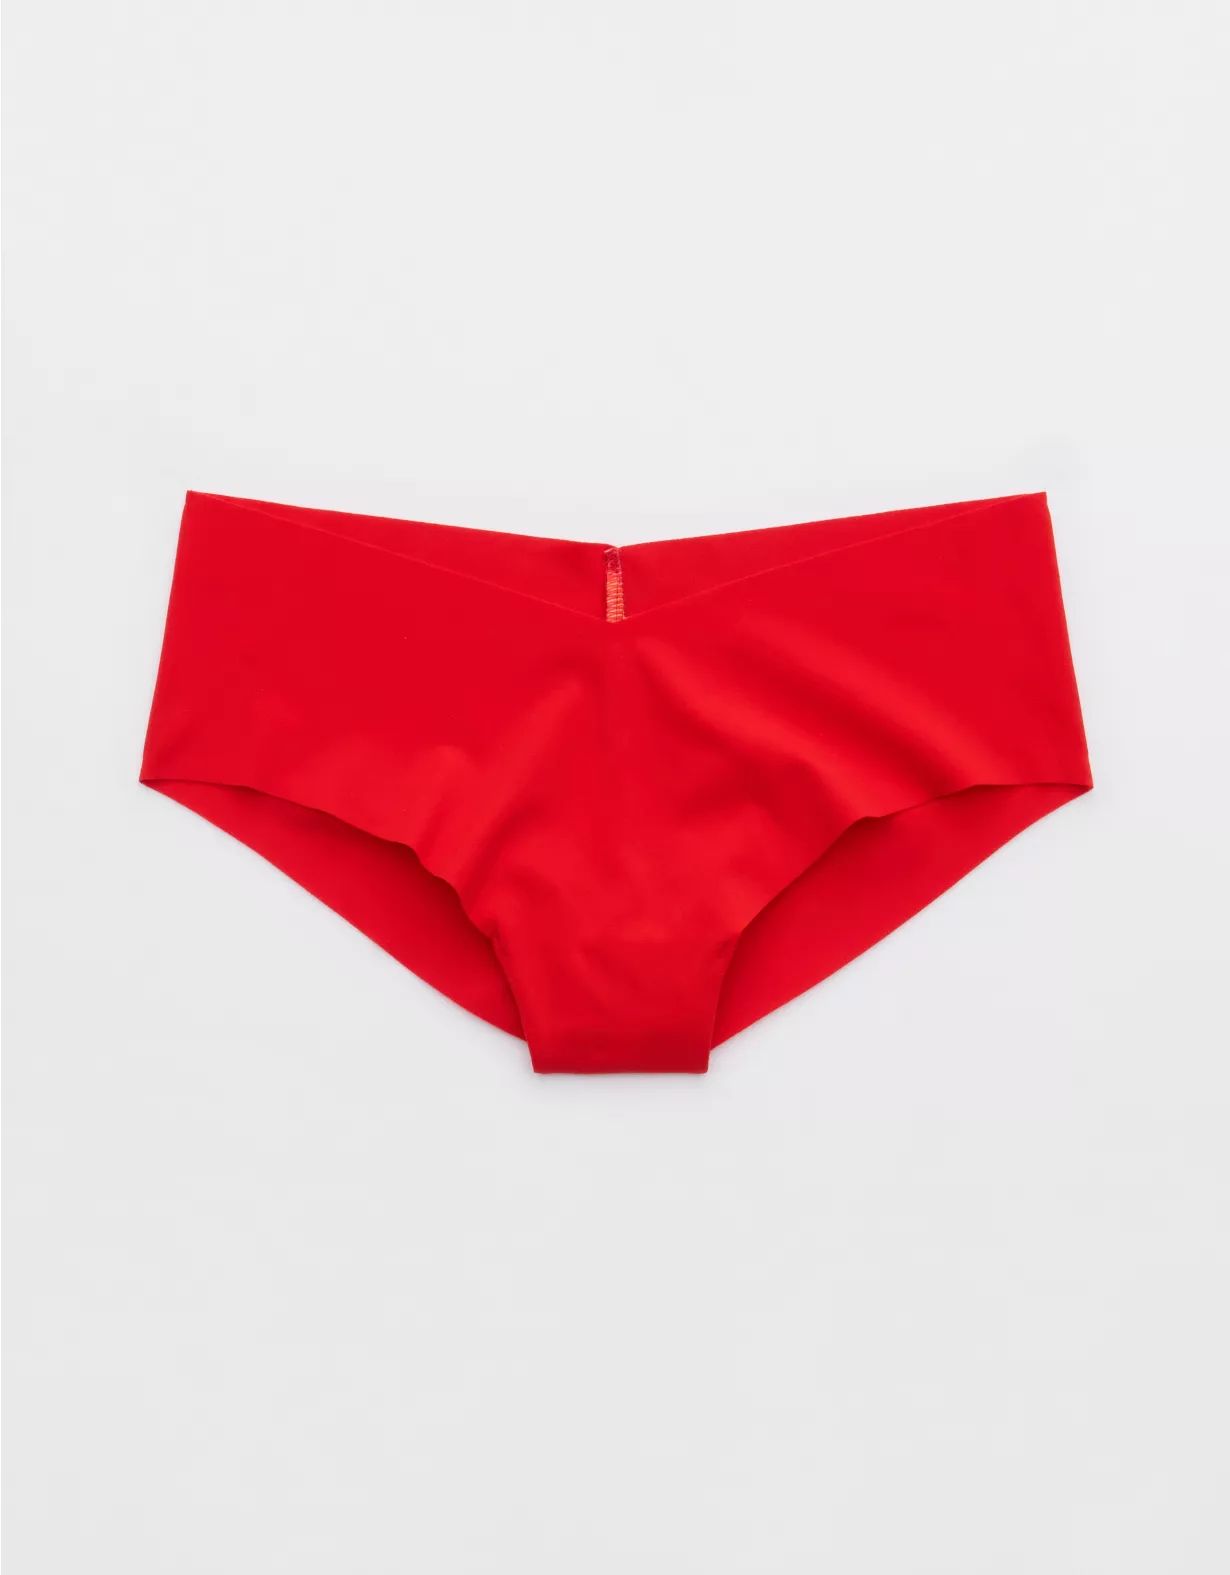 SMOOTHEZ No Show Cheeky Underwear | Aerie